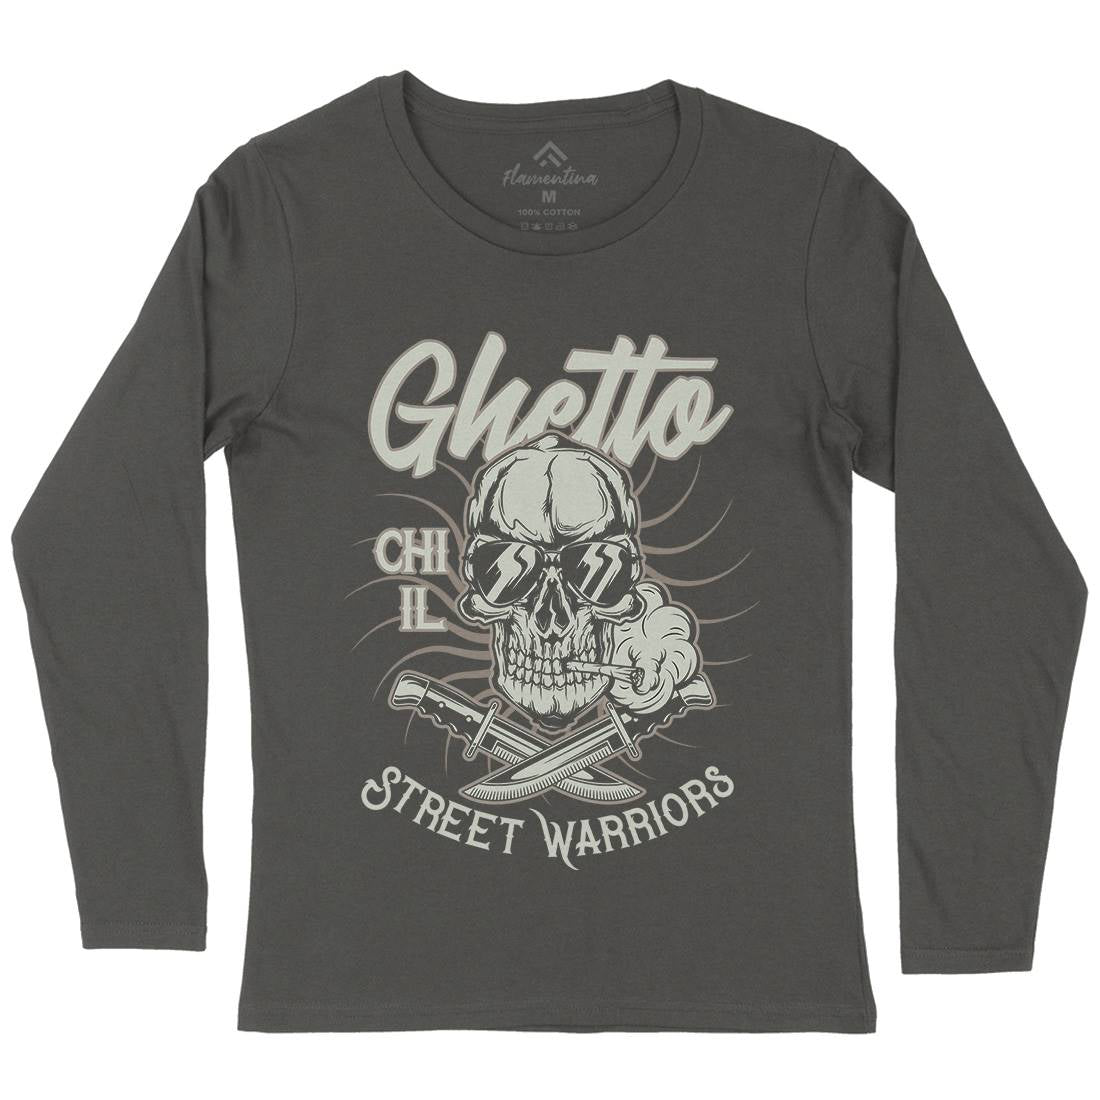 Ghetto Street Warriors Womens Long Sleeve T-Shirt Retro D937